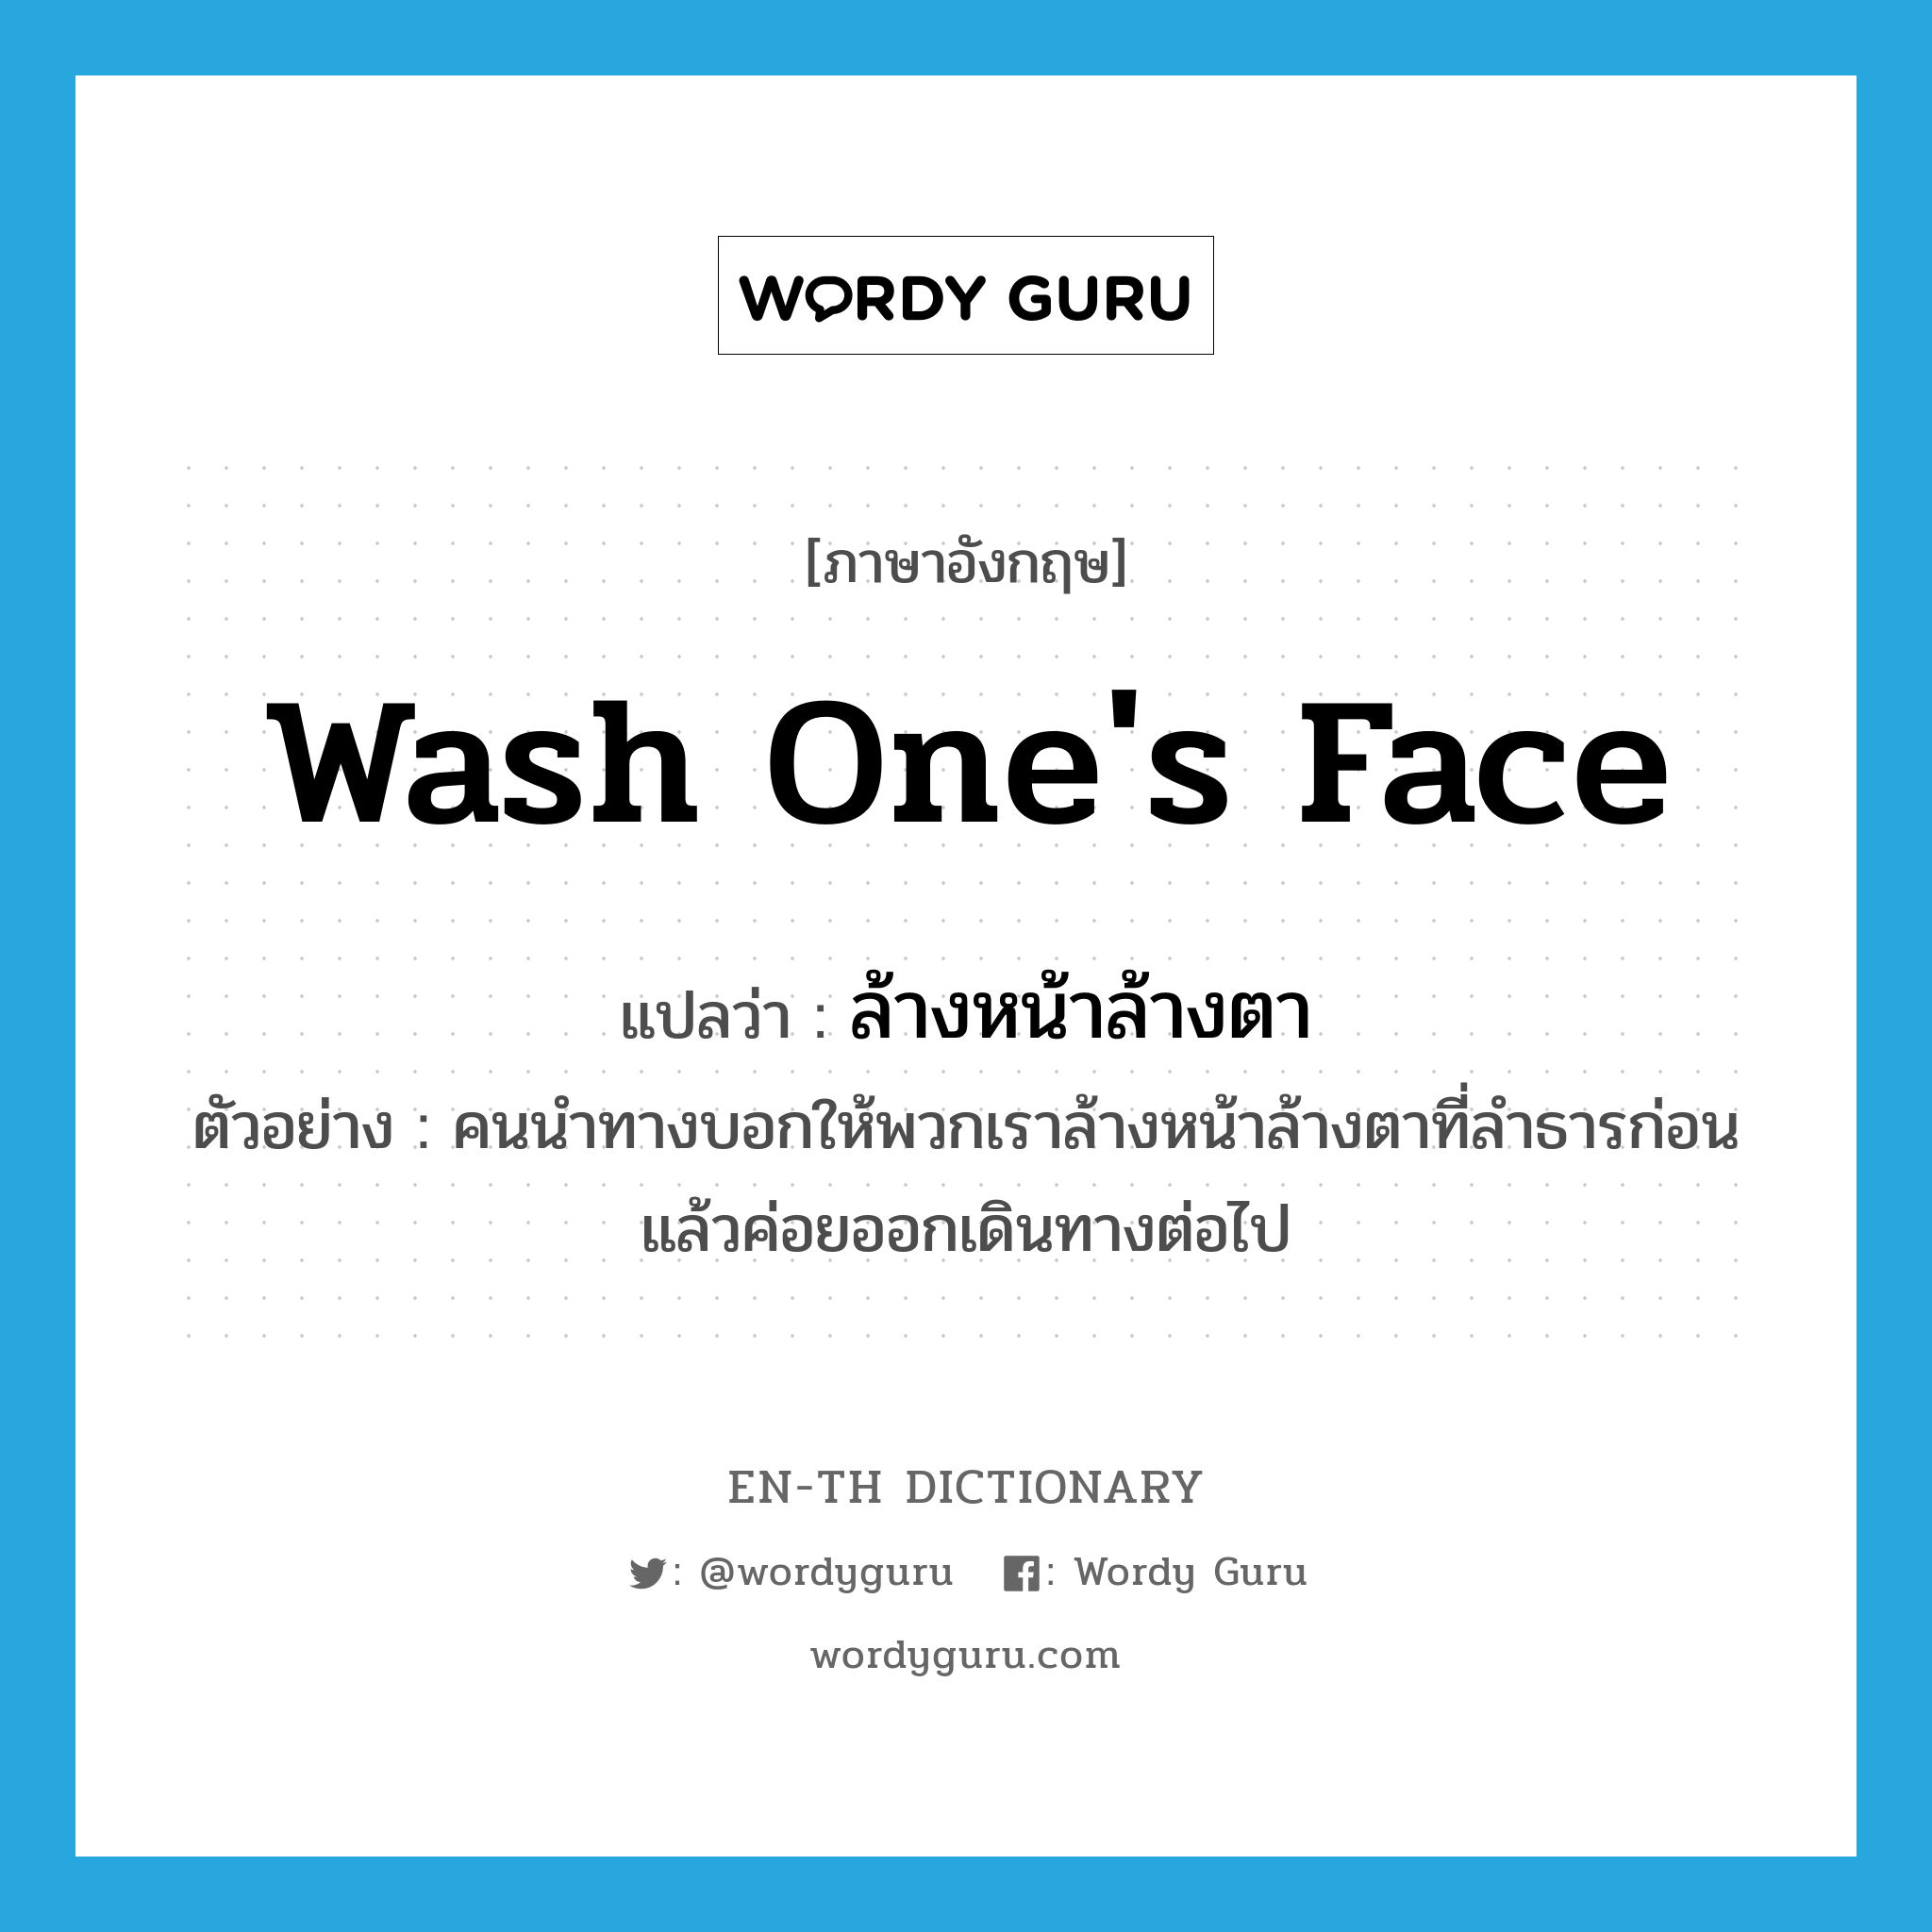 ล้างหน้าล้างตา ภาษาอังกฤษ?, คำศัพท์ภาษาอังกฤษ ล้างหน้าล้างตา แปลว่า wash one's face ประเภท V ตัวอย่าง คนนำทางบอกให้พวกเราล้างหน้าล้างตาที่ลำธารก่อน แล้วค่อยออกเดินทางต่อไป หมวด V